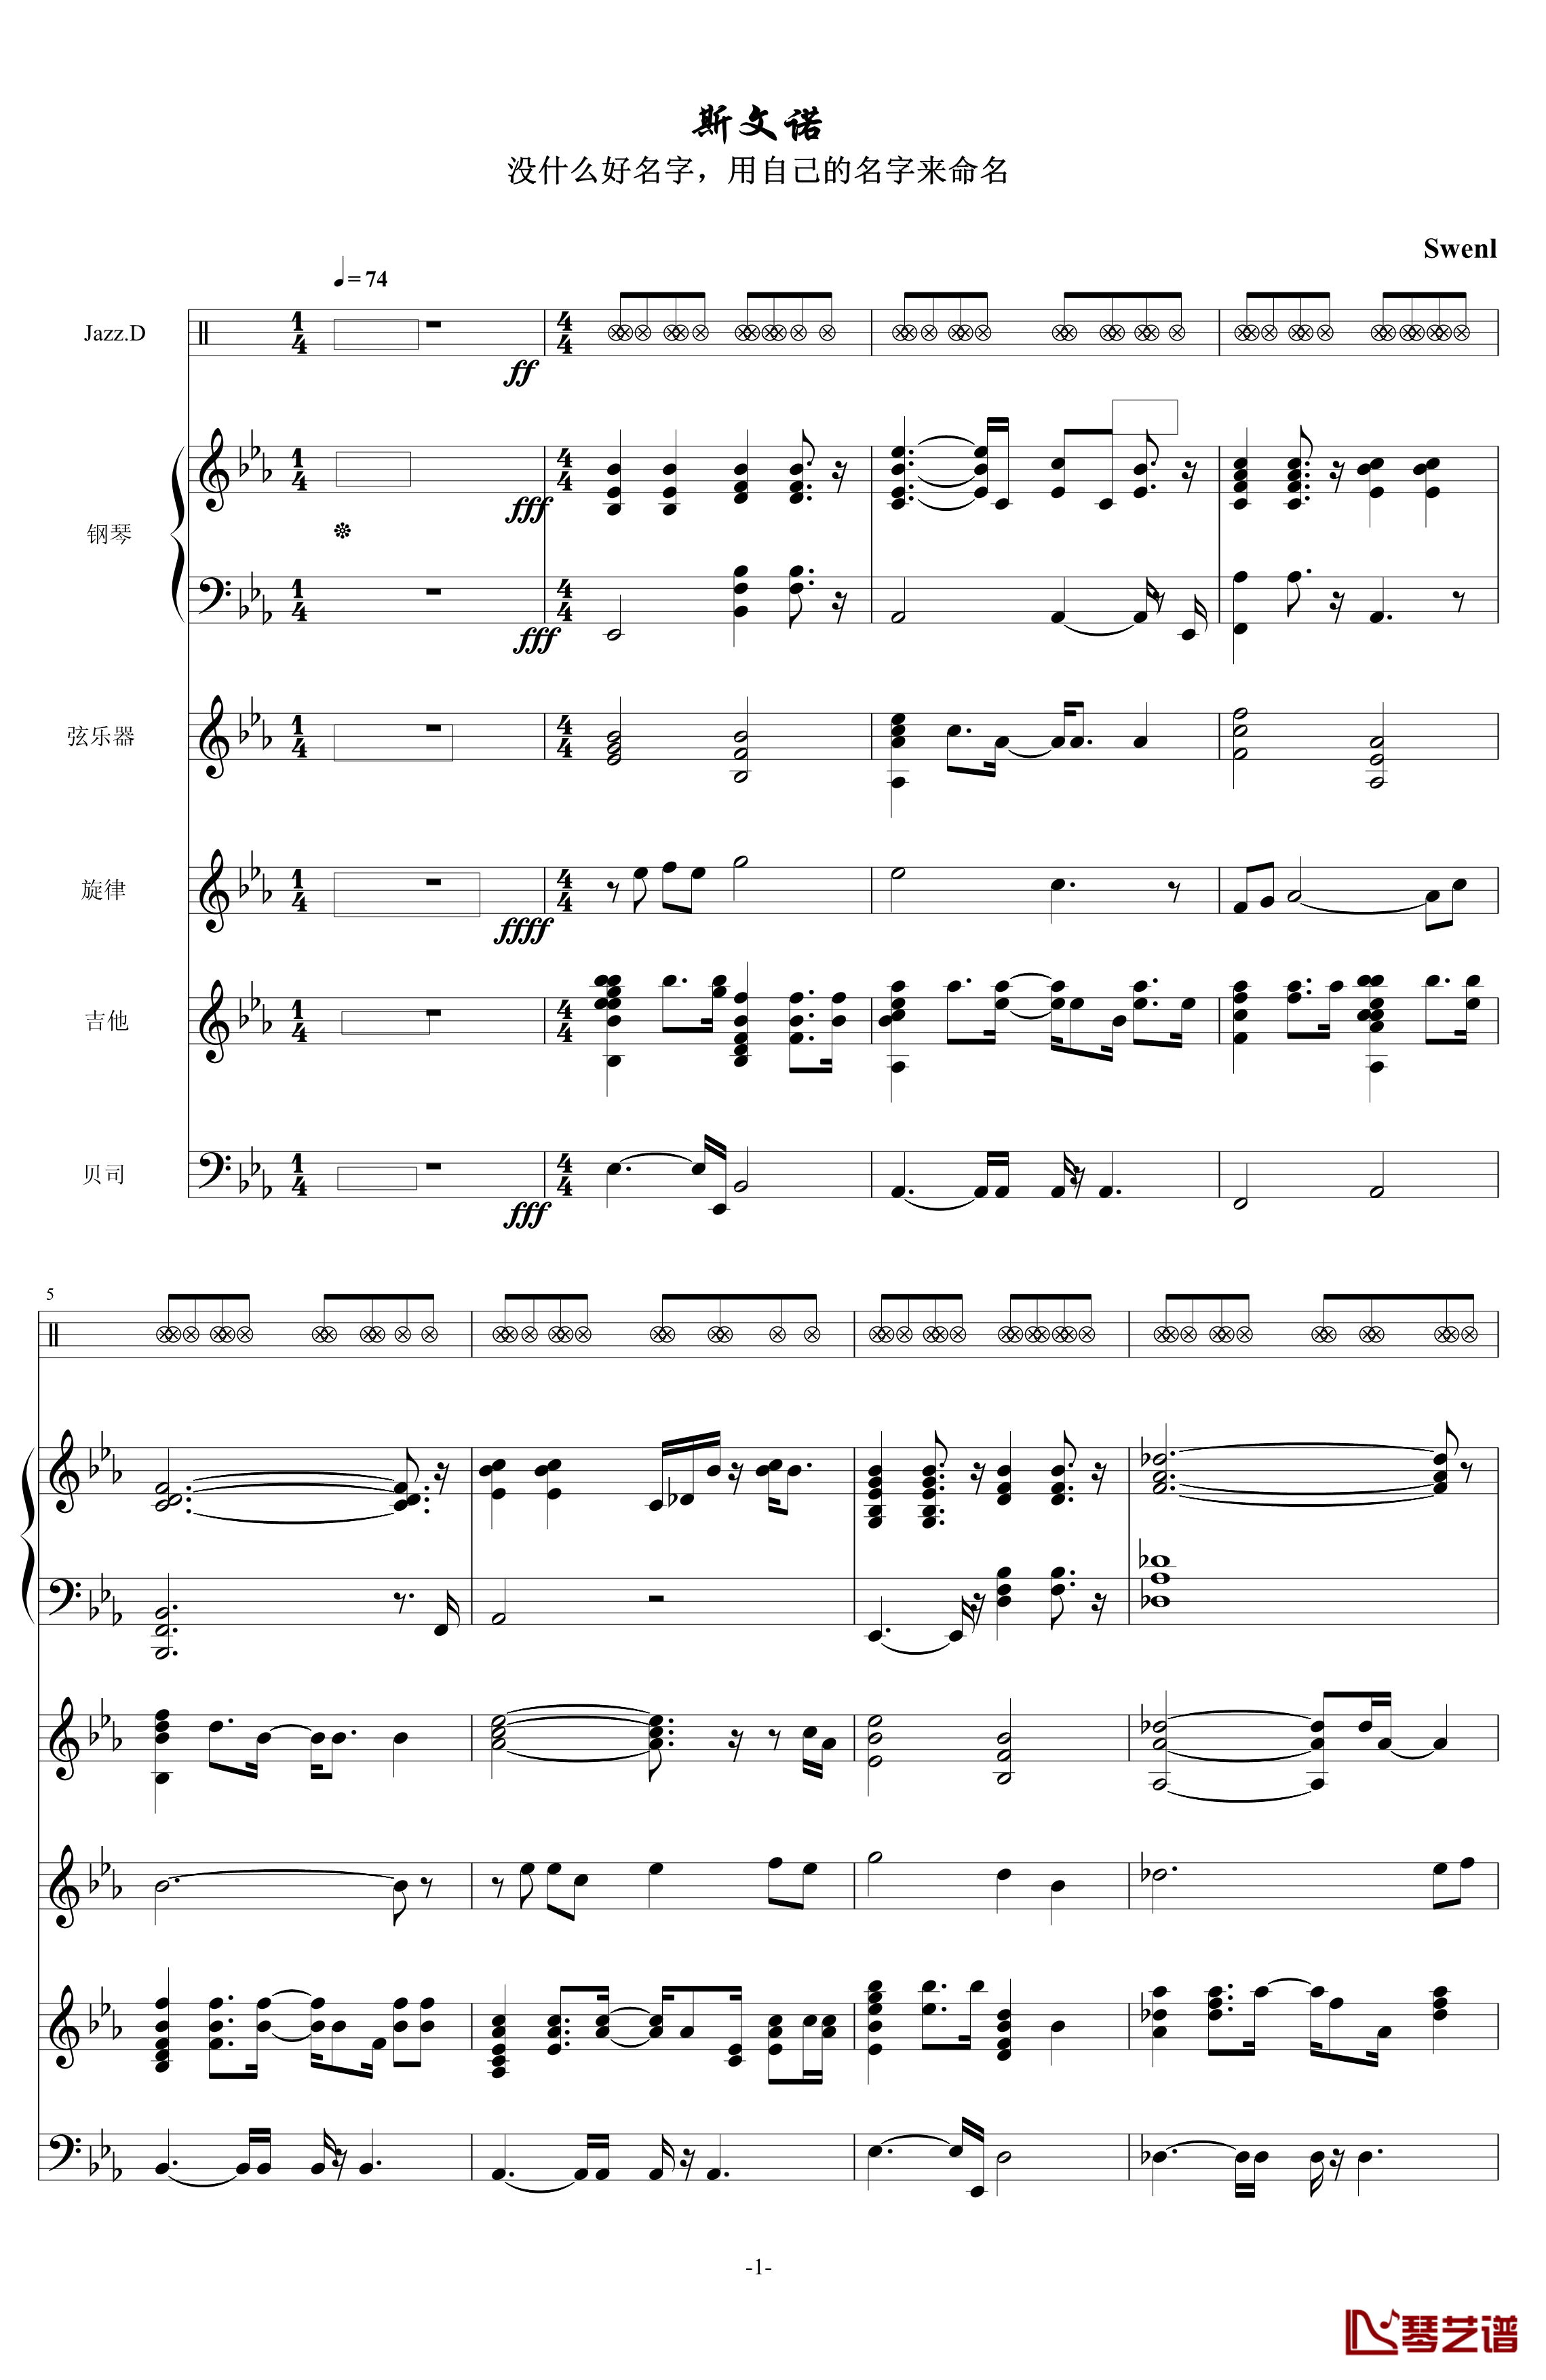 斯文诺钢琴谱-音效修改-swenl1